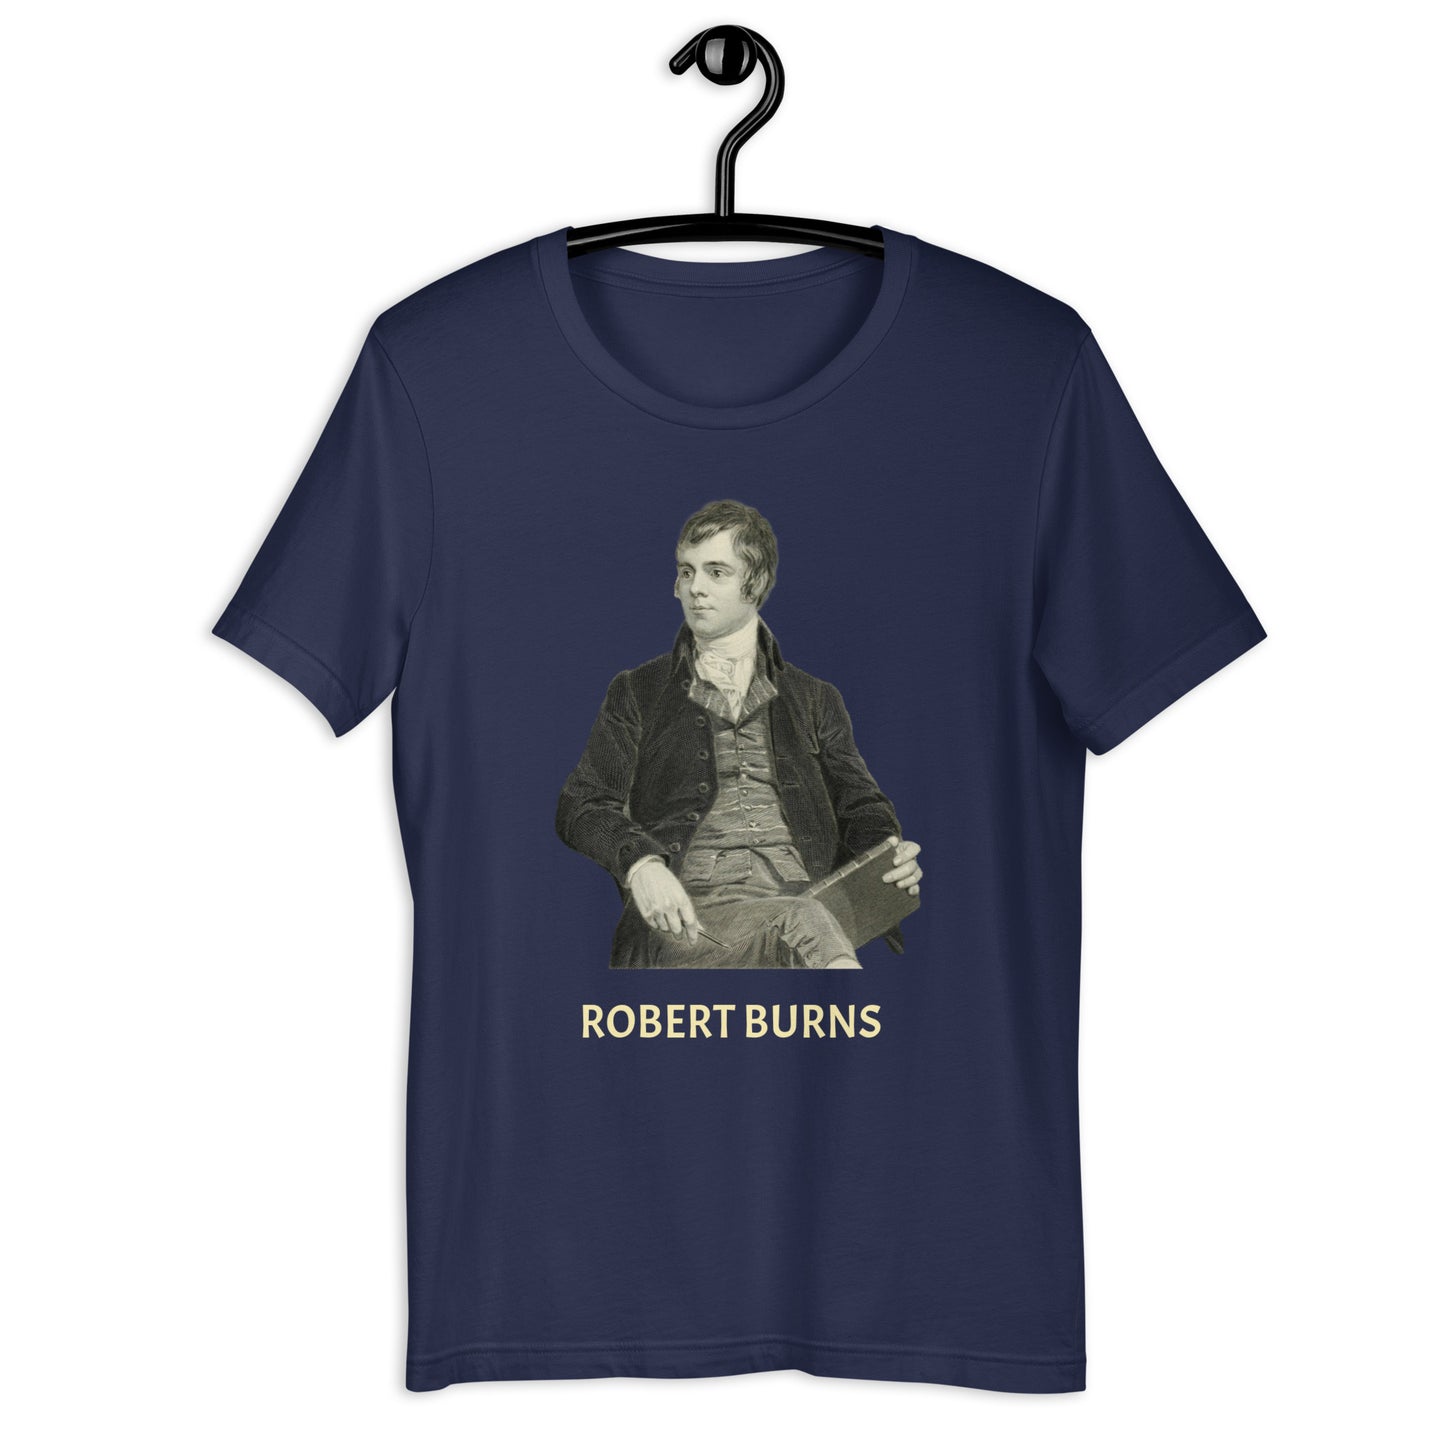 Robert Burns unisex t-shirt